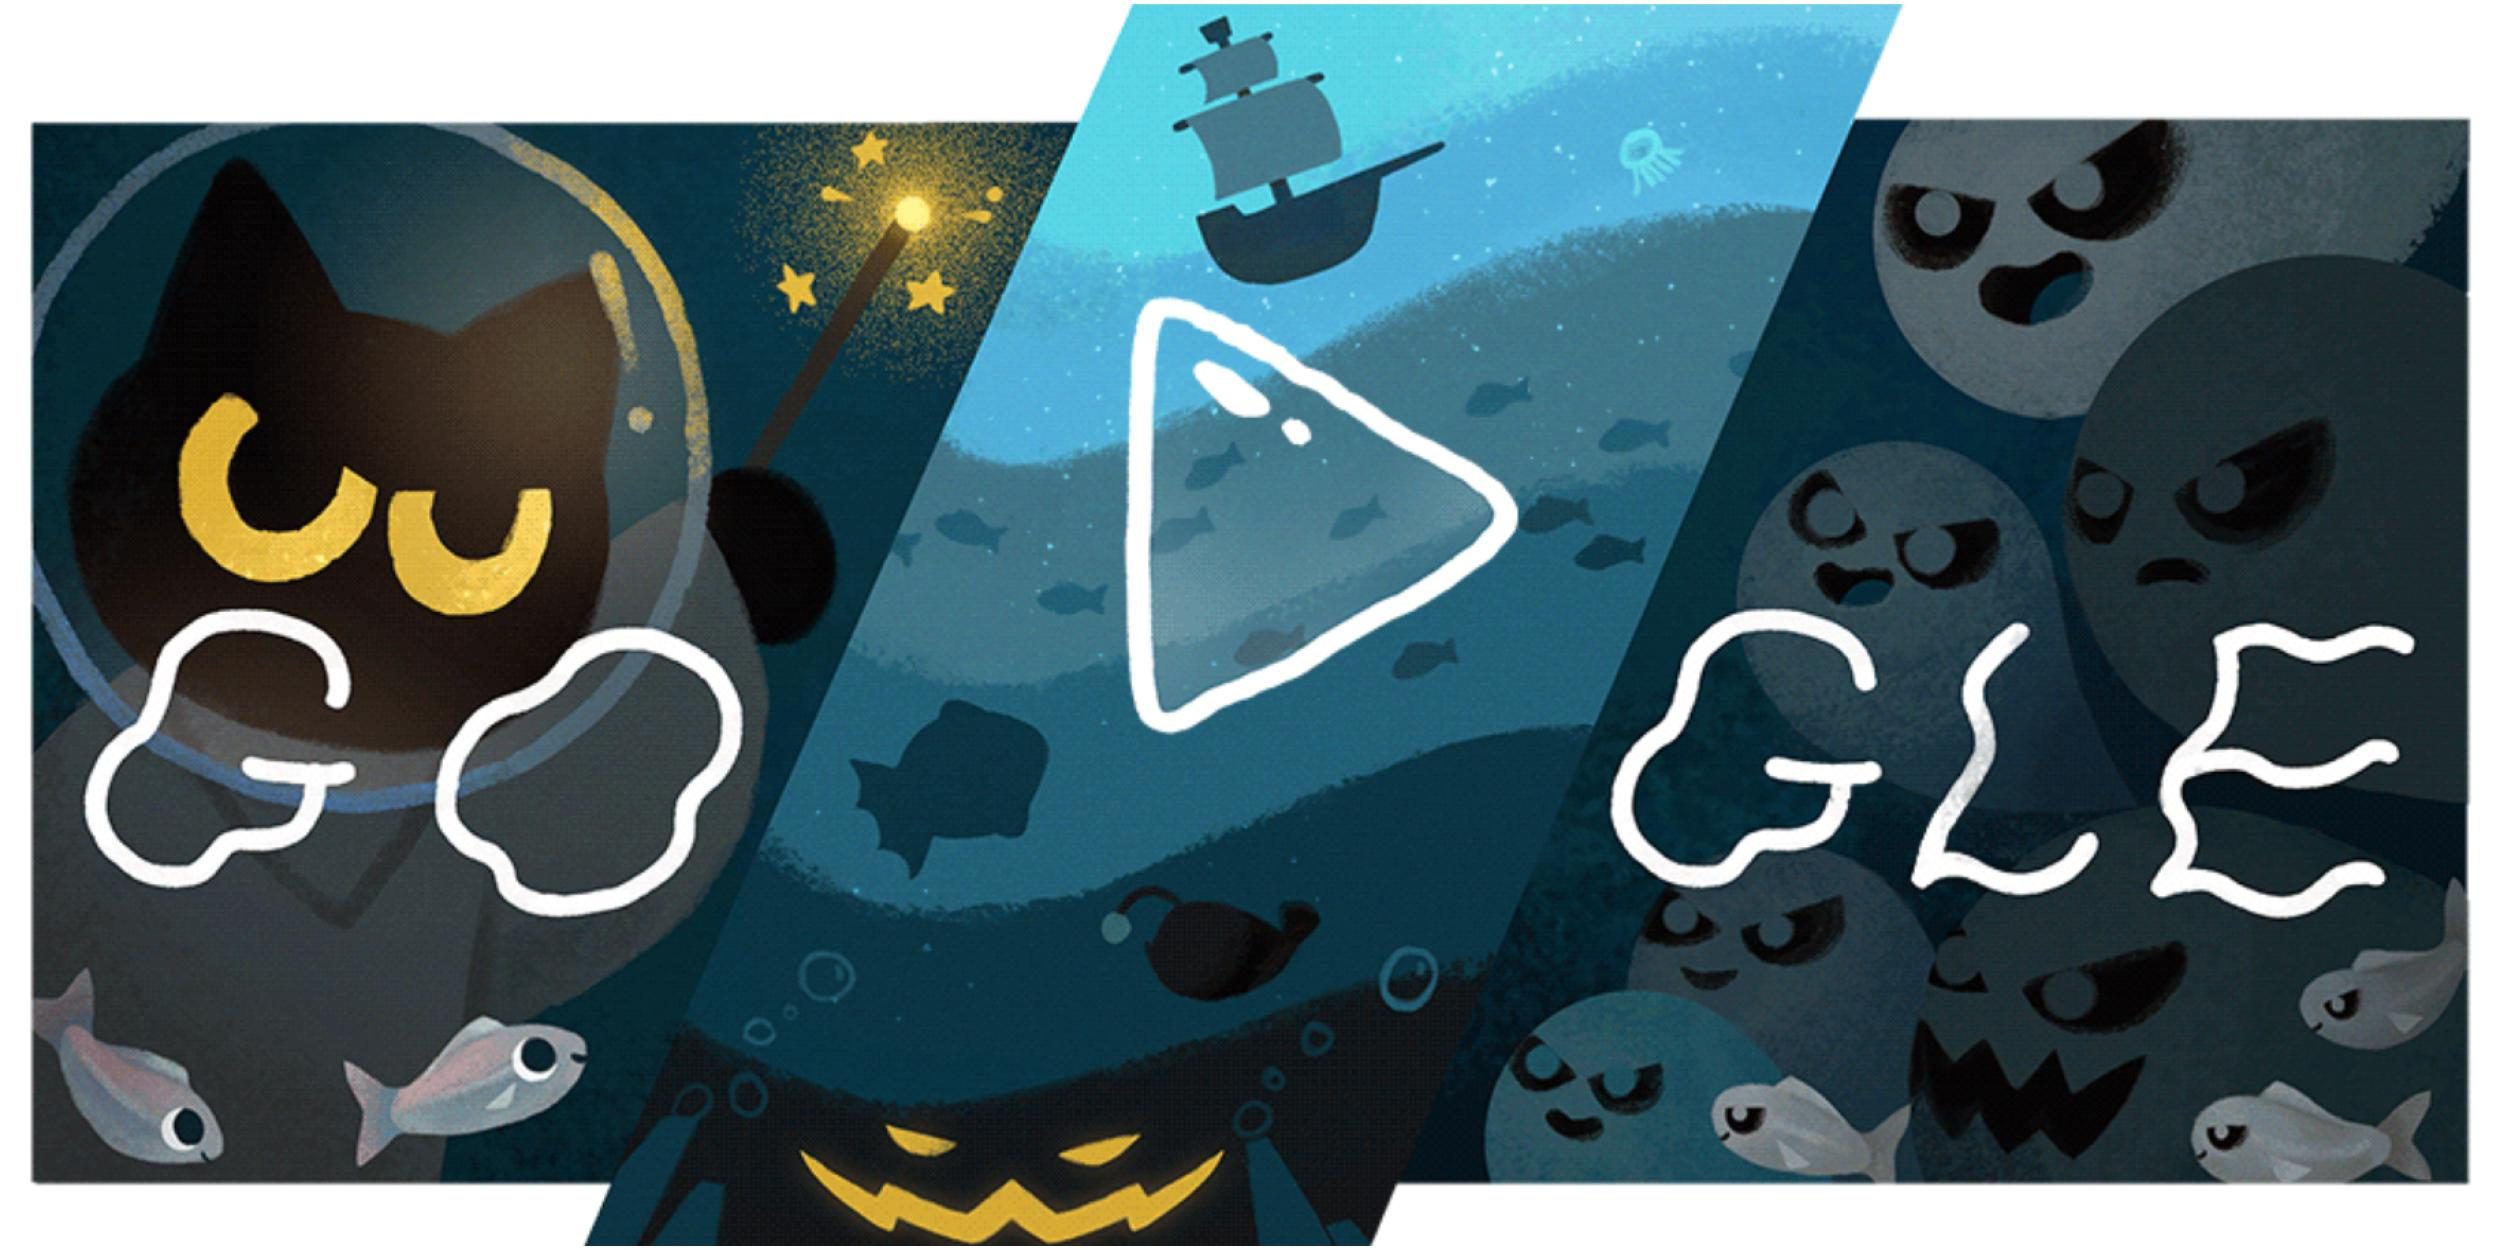 Ajude o gatinho mágico neste doodle de Halloween do Google - GKPB - Geek  Publicitário